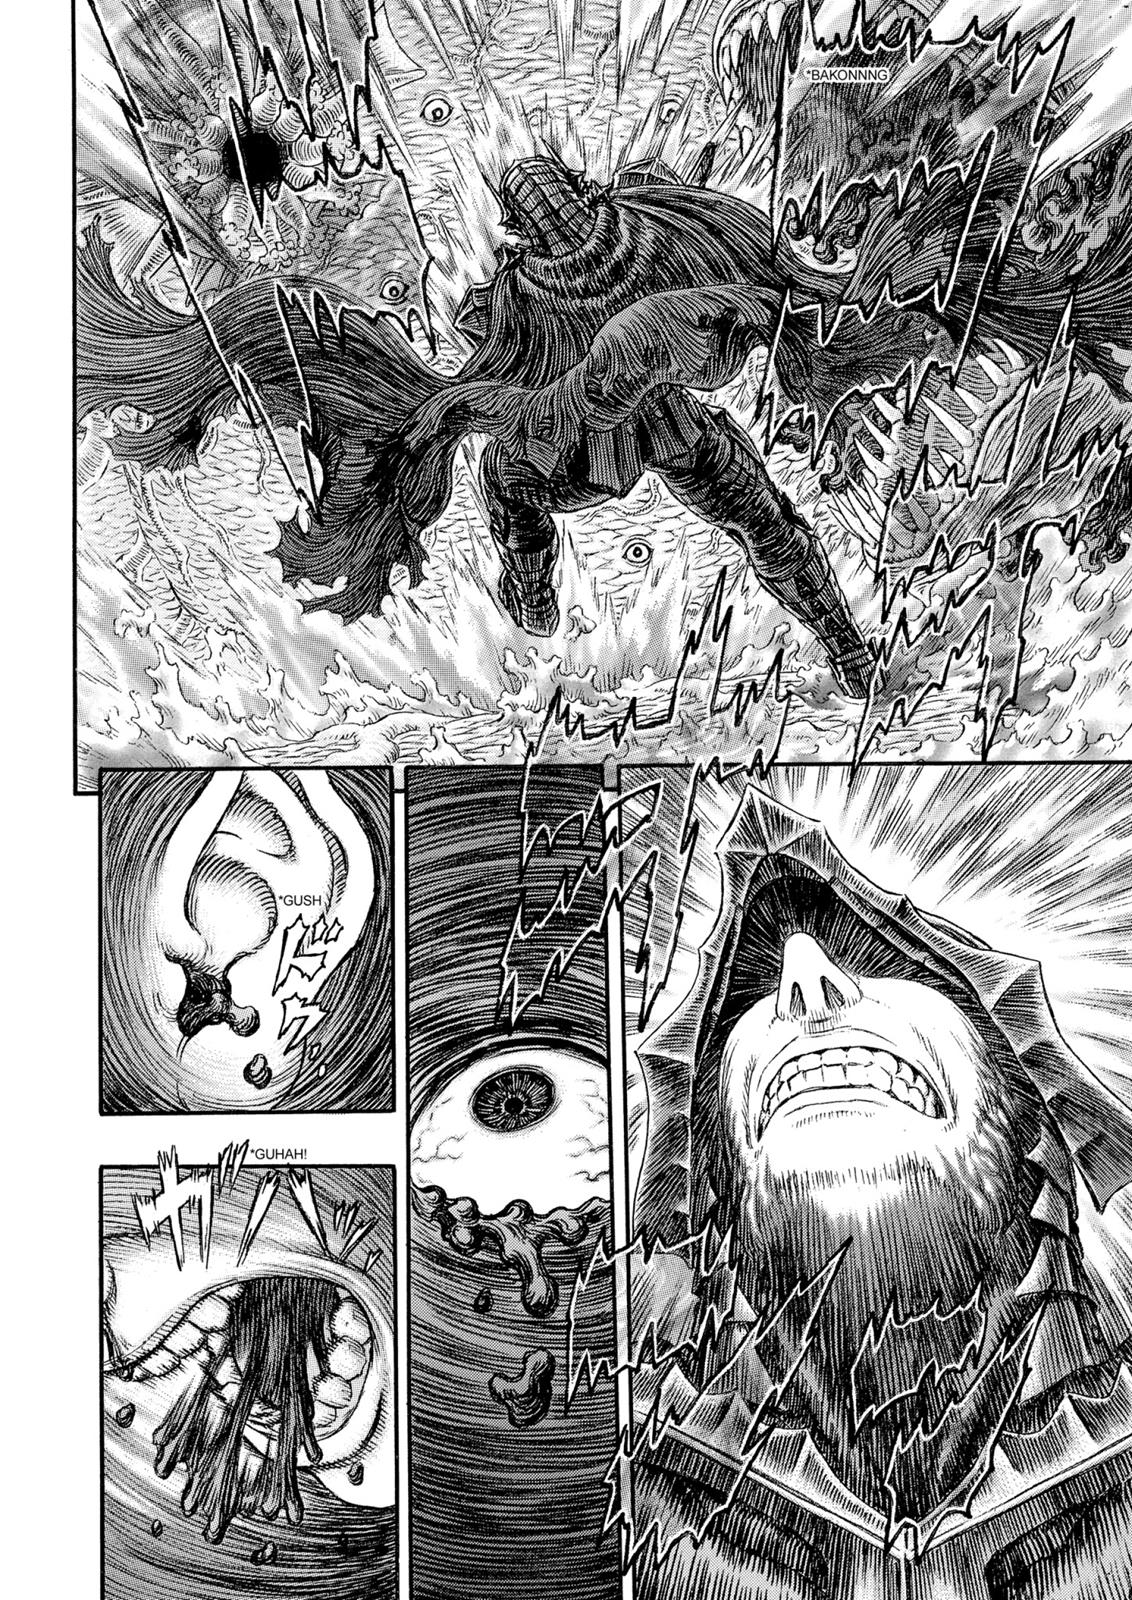 Berserk Manga Chapter 324 image 14